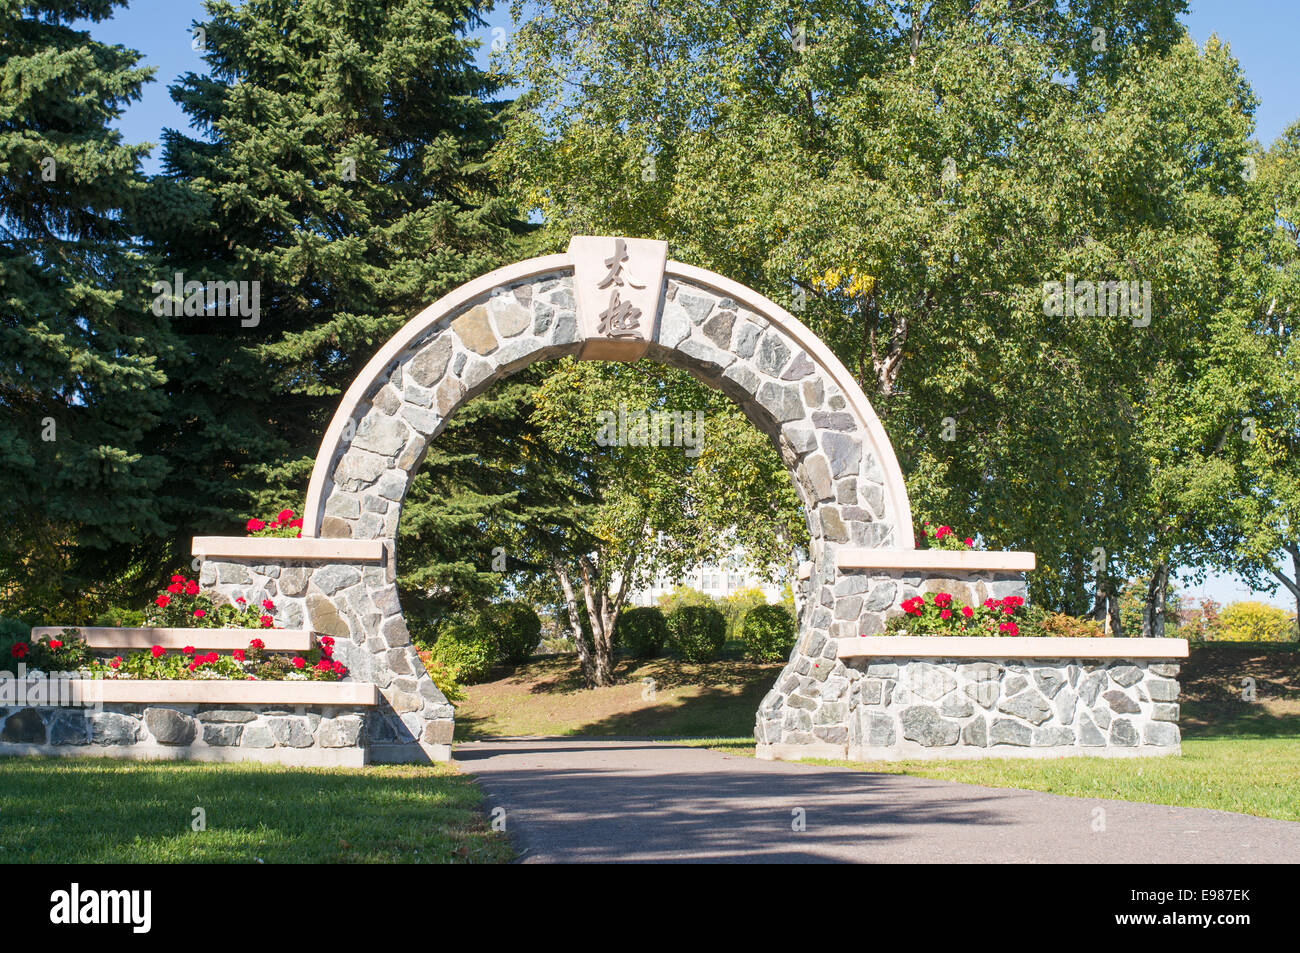 International Taiji Park arch Thunder Bay, Ontario, Canada Stock Photo